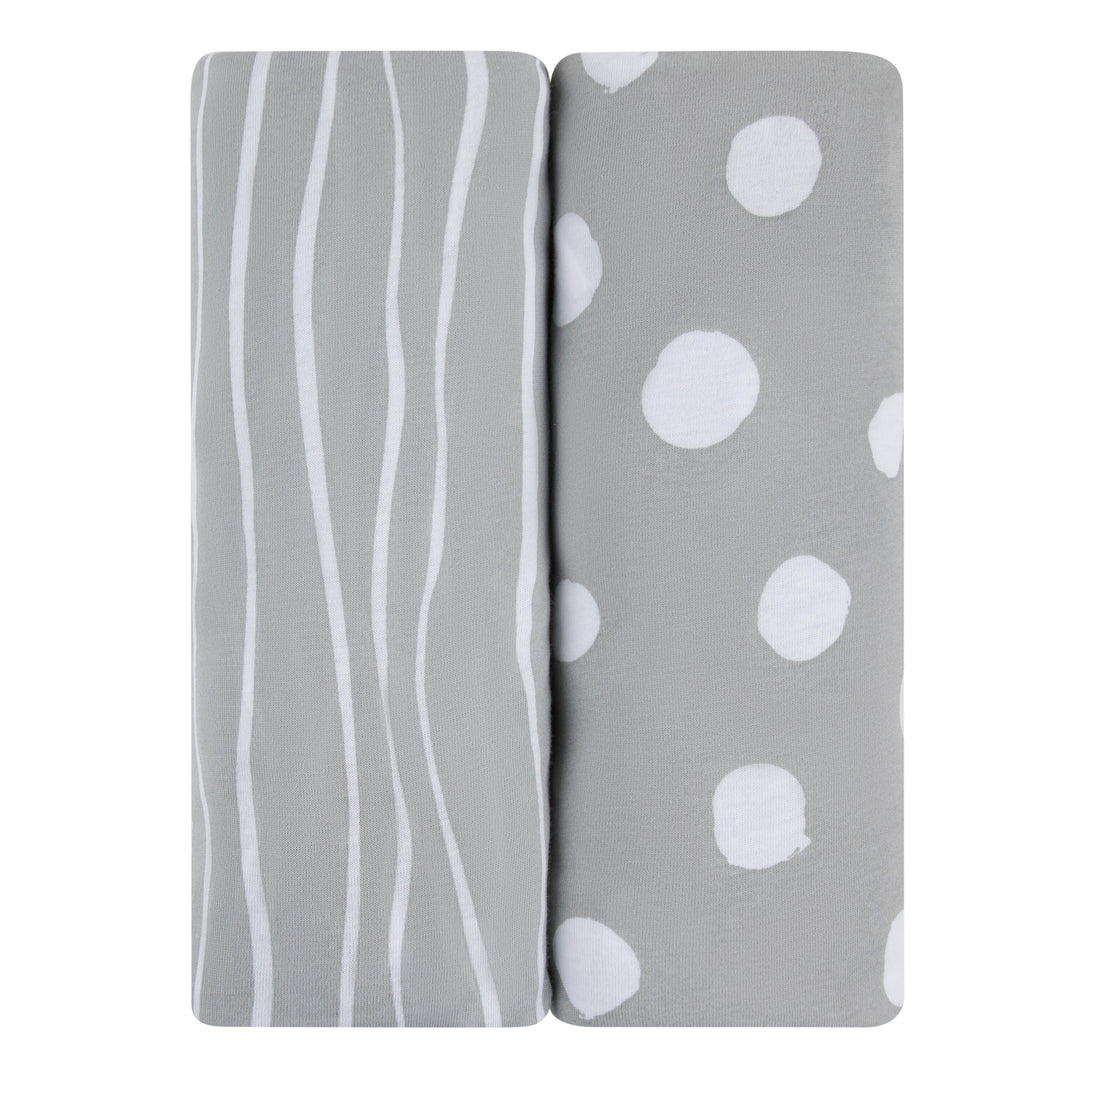 Gray Stripes & Dots Crib Sheet Set